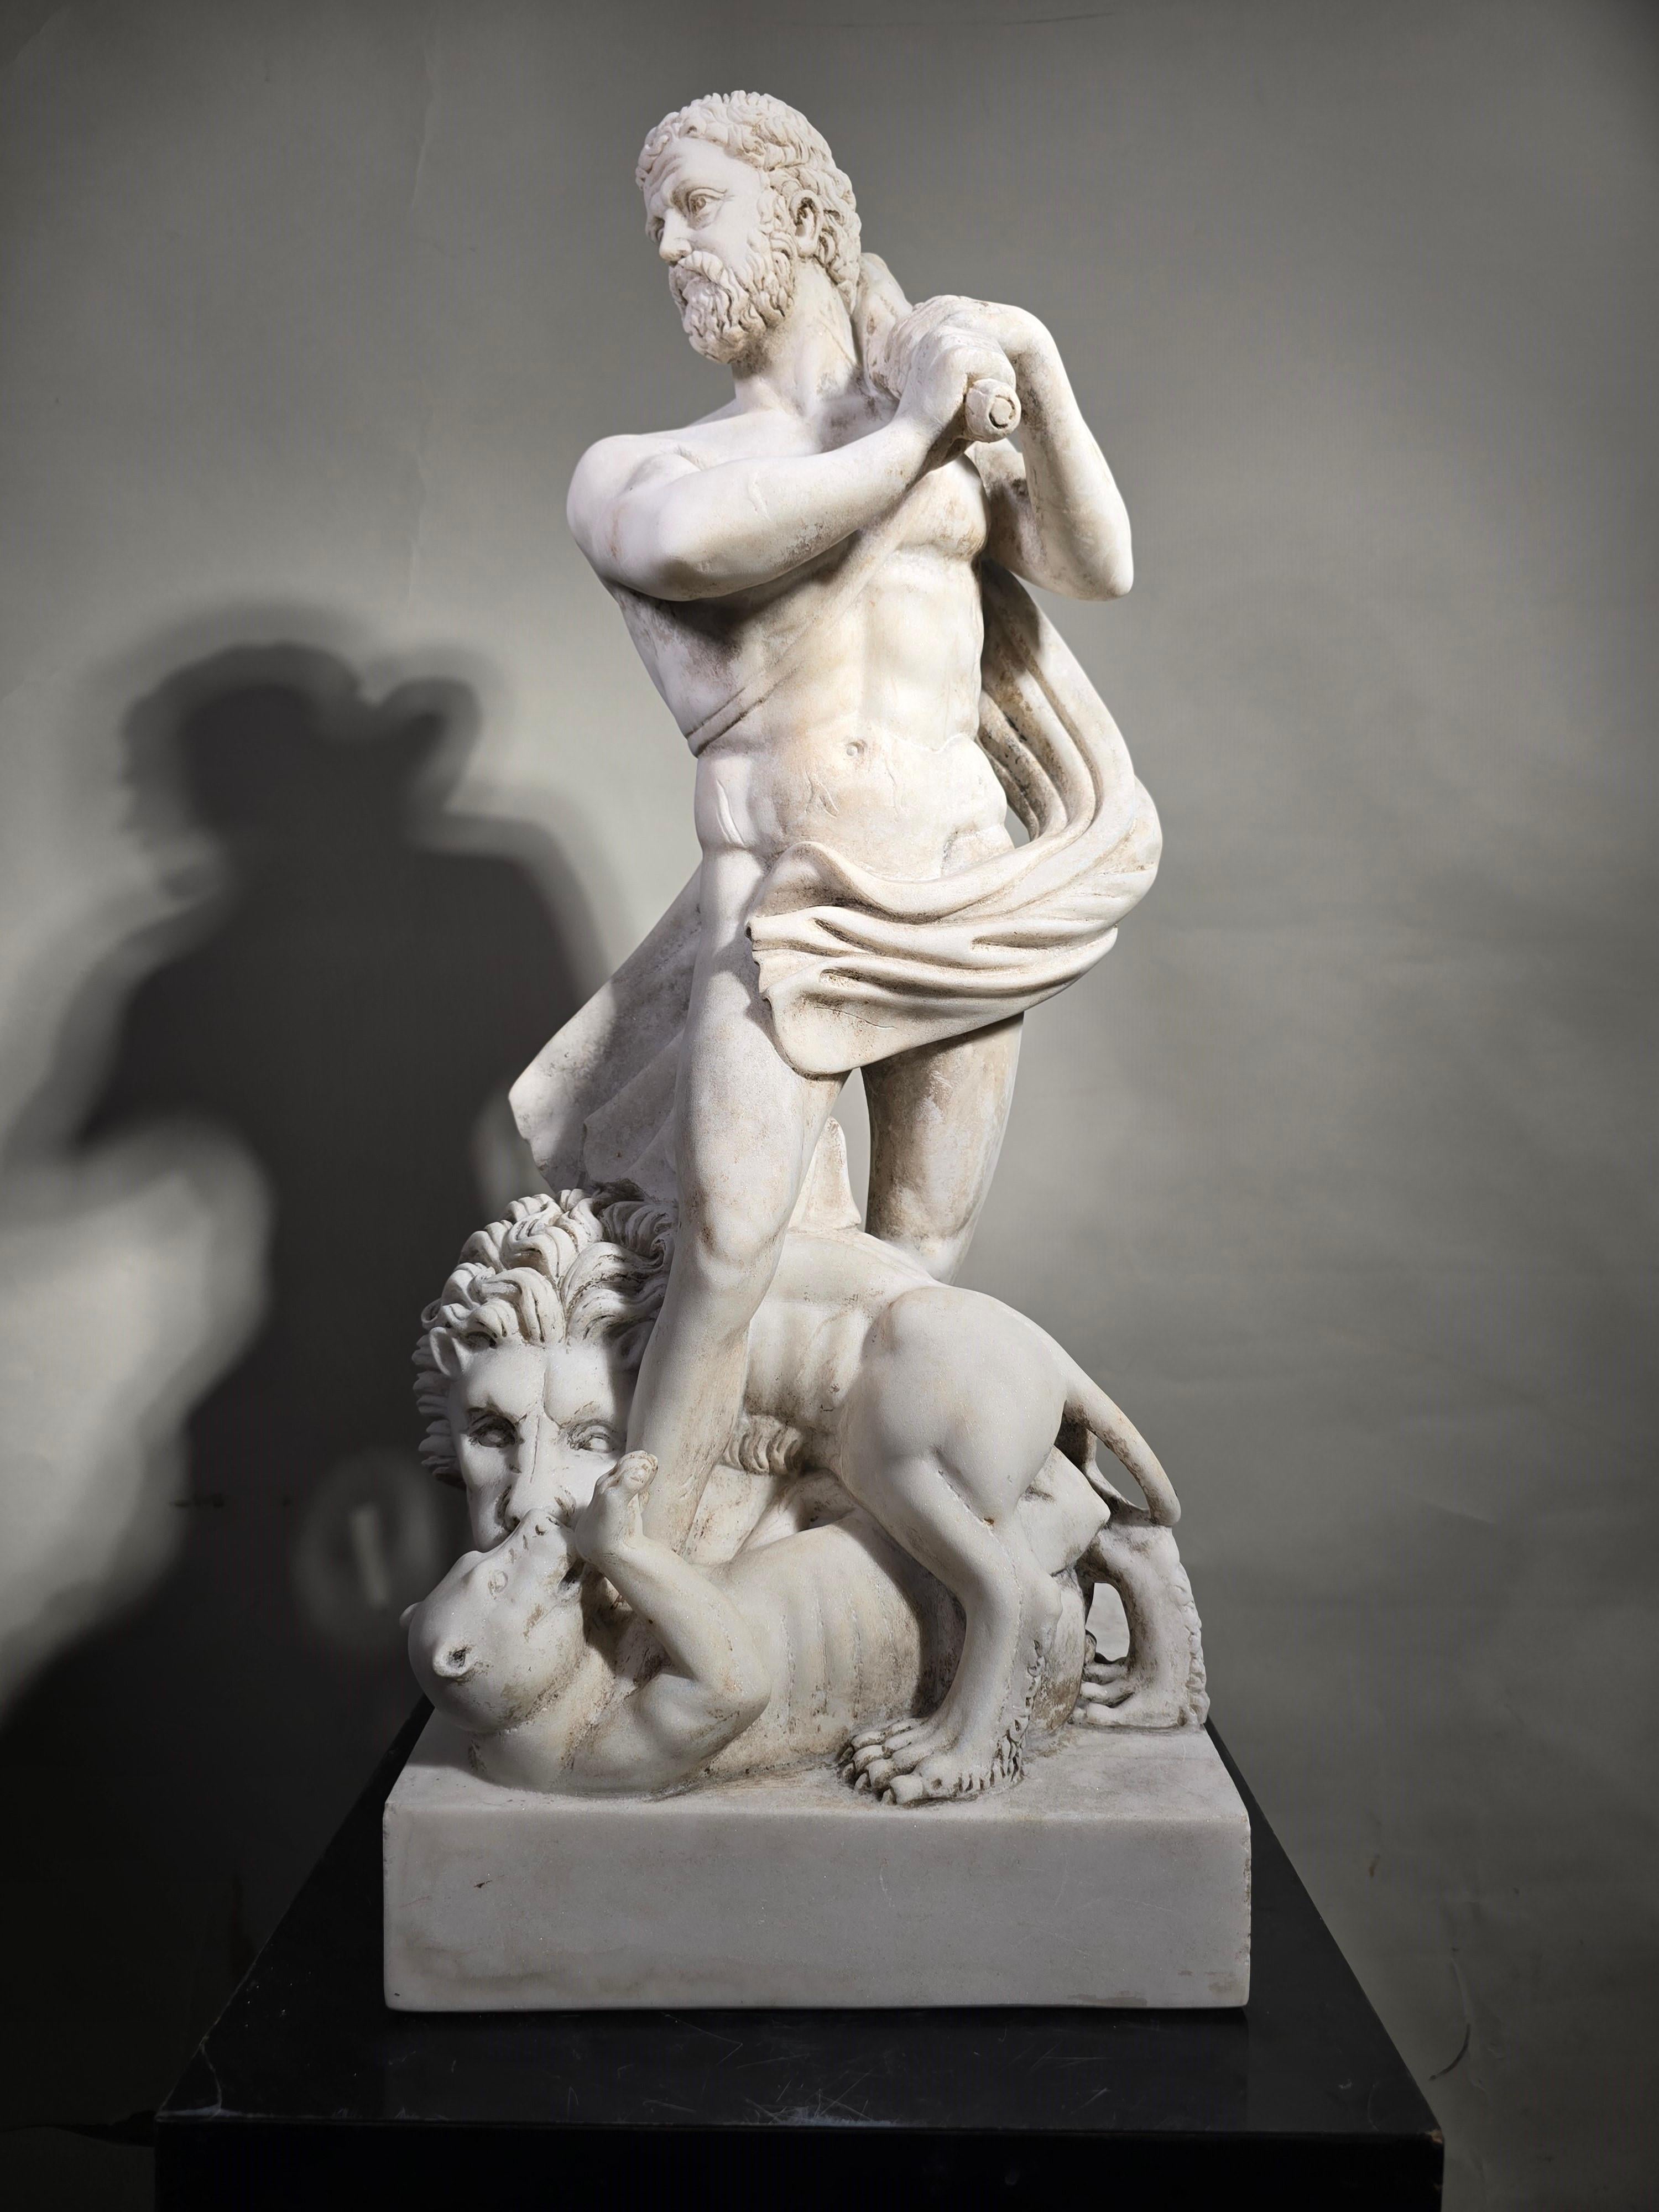 Cette majestueuse sculpture en marbre de Carrare, représentant la figure héroïque d'Hercule, est une œuvre d'art unique du XIXe siècle. D'une élégance intemporelle et d'une exécution méticuleuse, cette pièce offre une combinaison impressionnante de